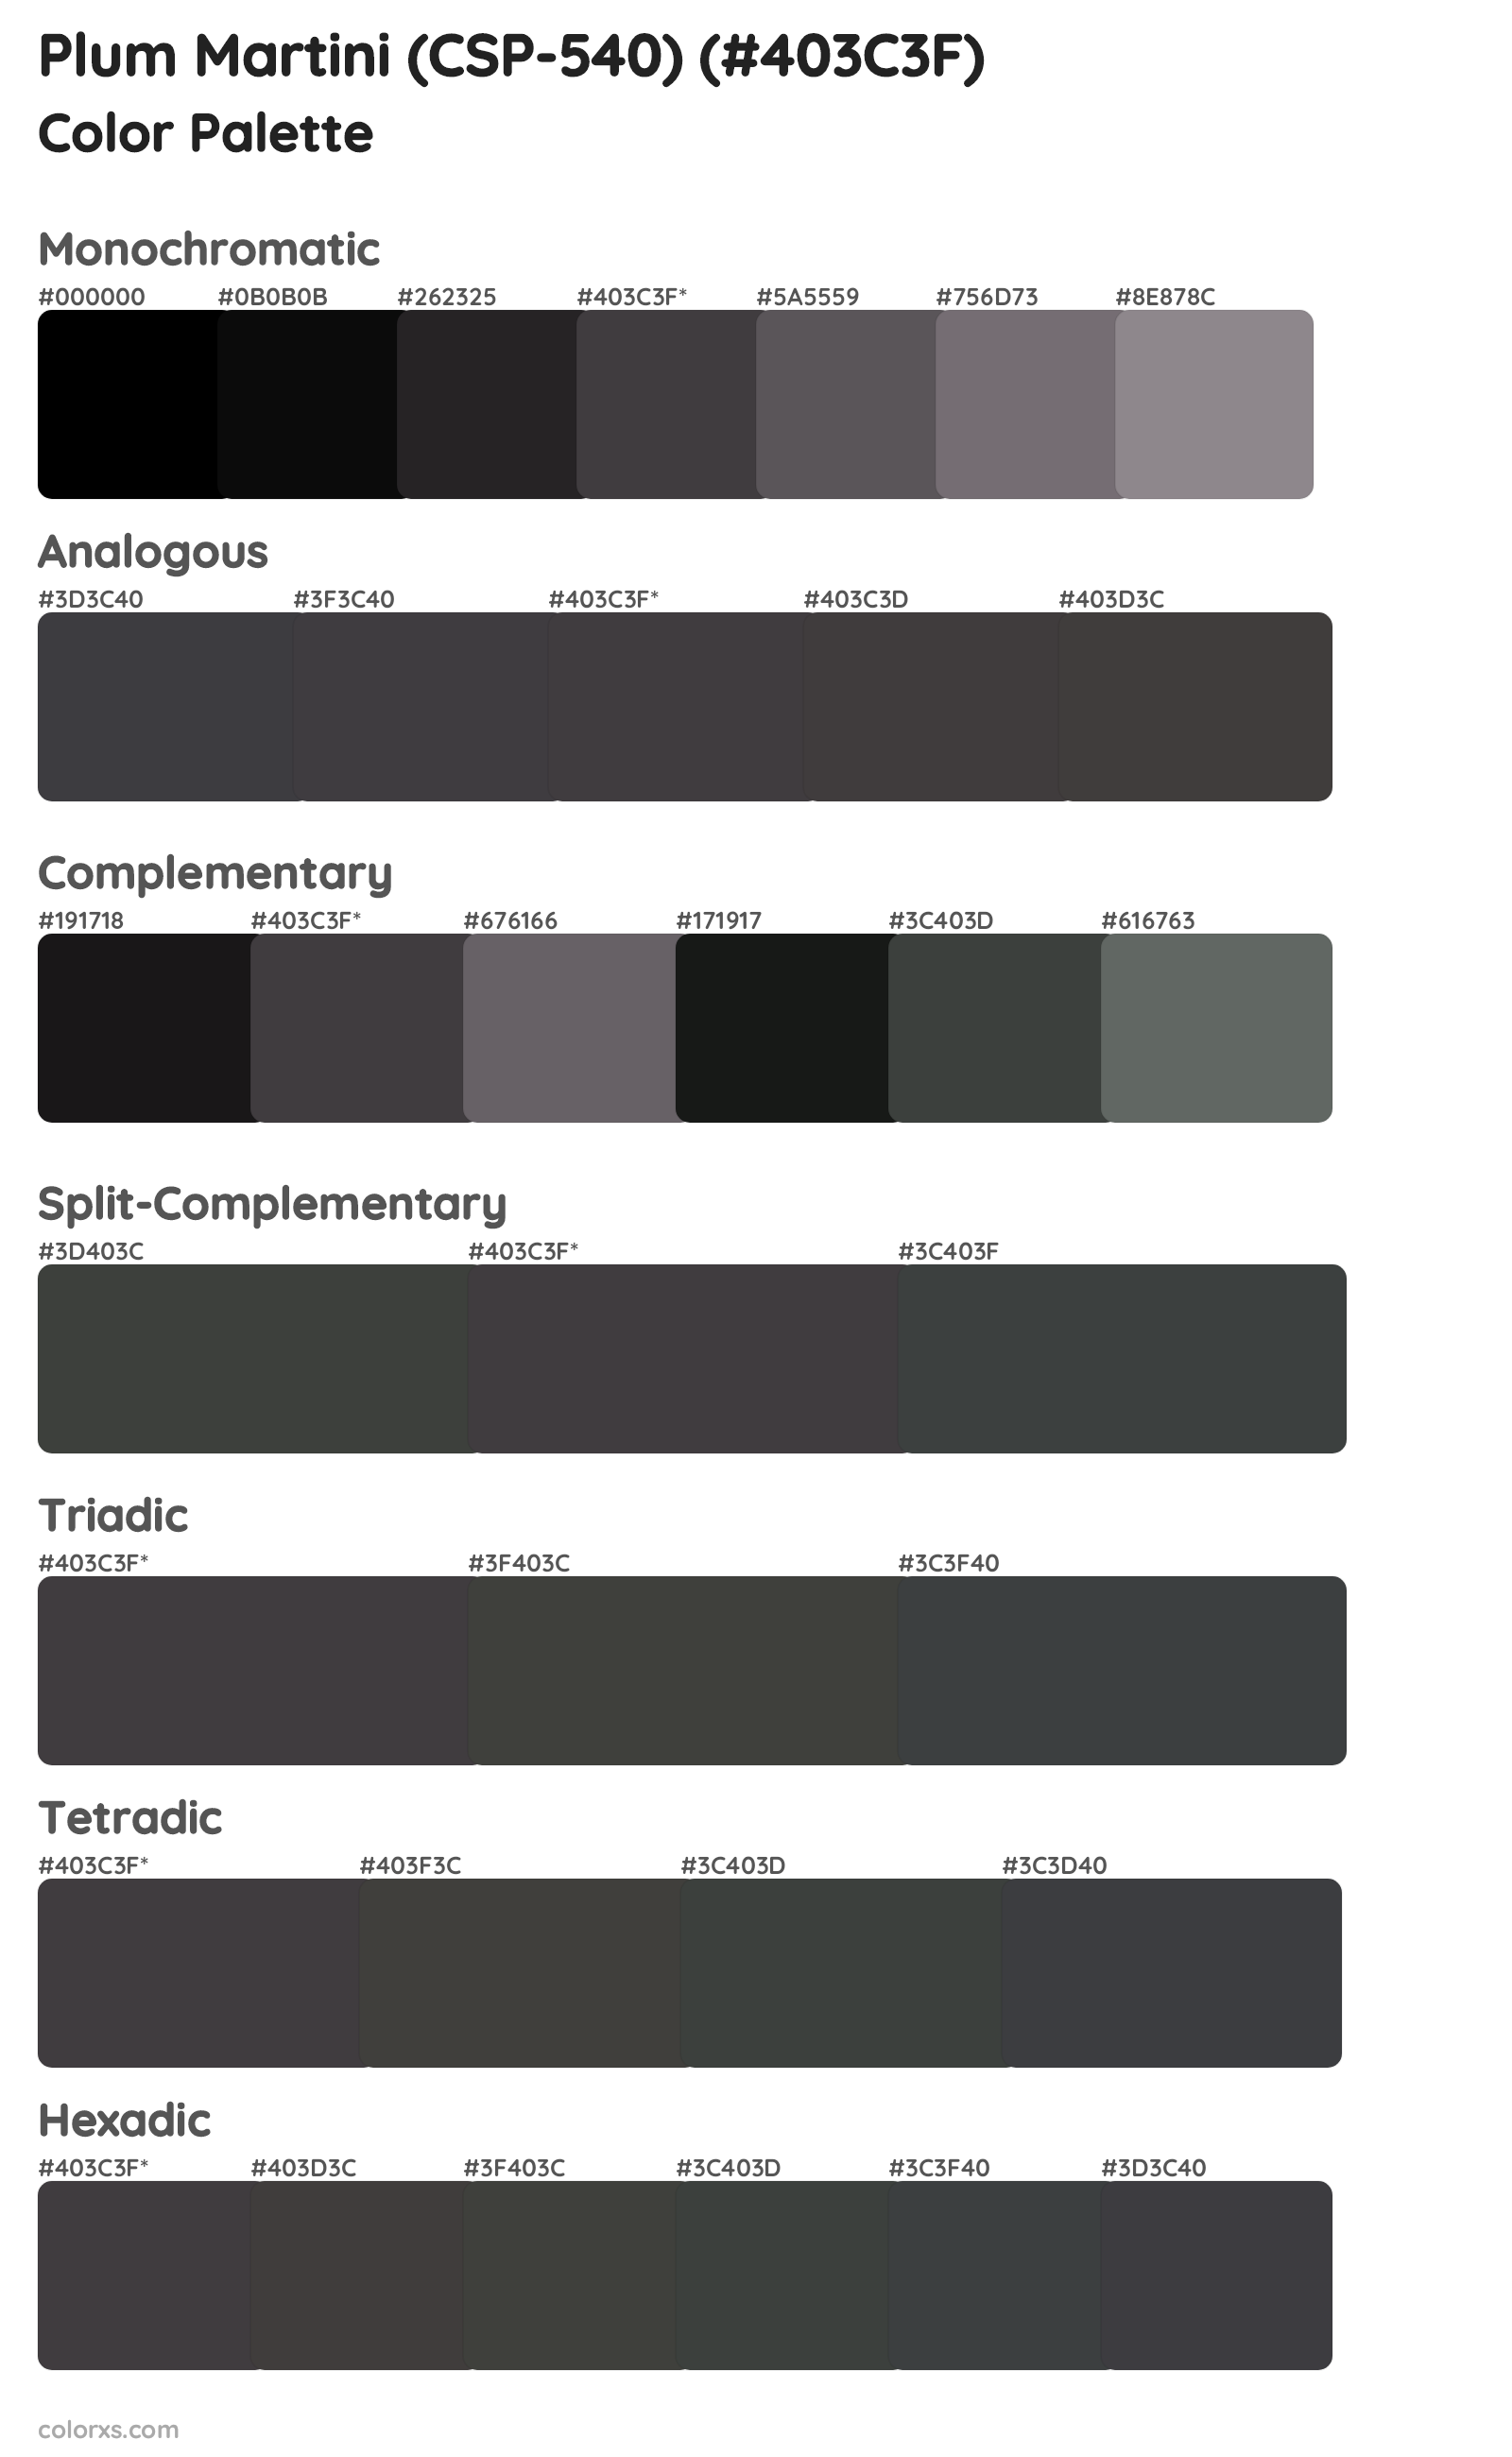 Plum Martini (CSP-540) Color Scheme Palettes